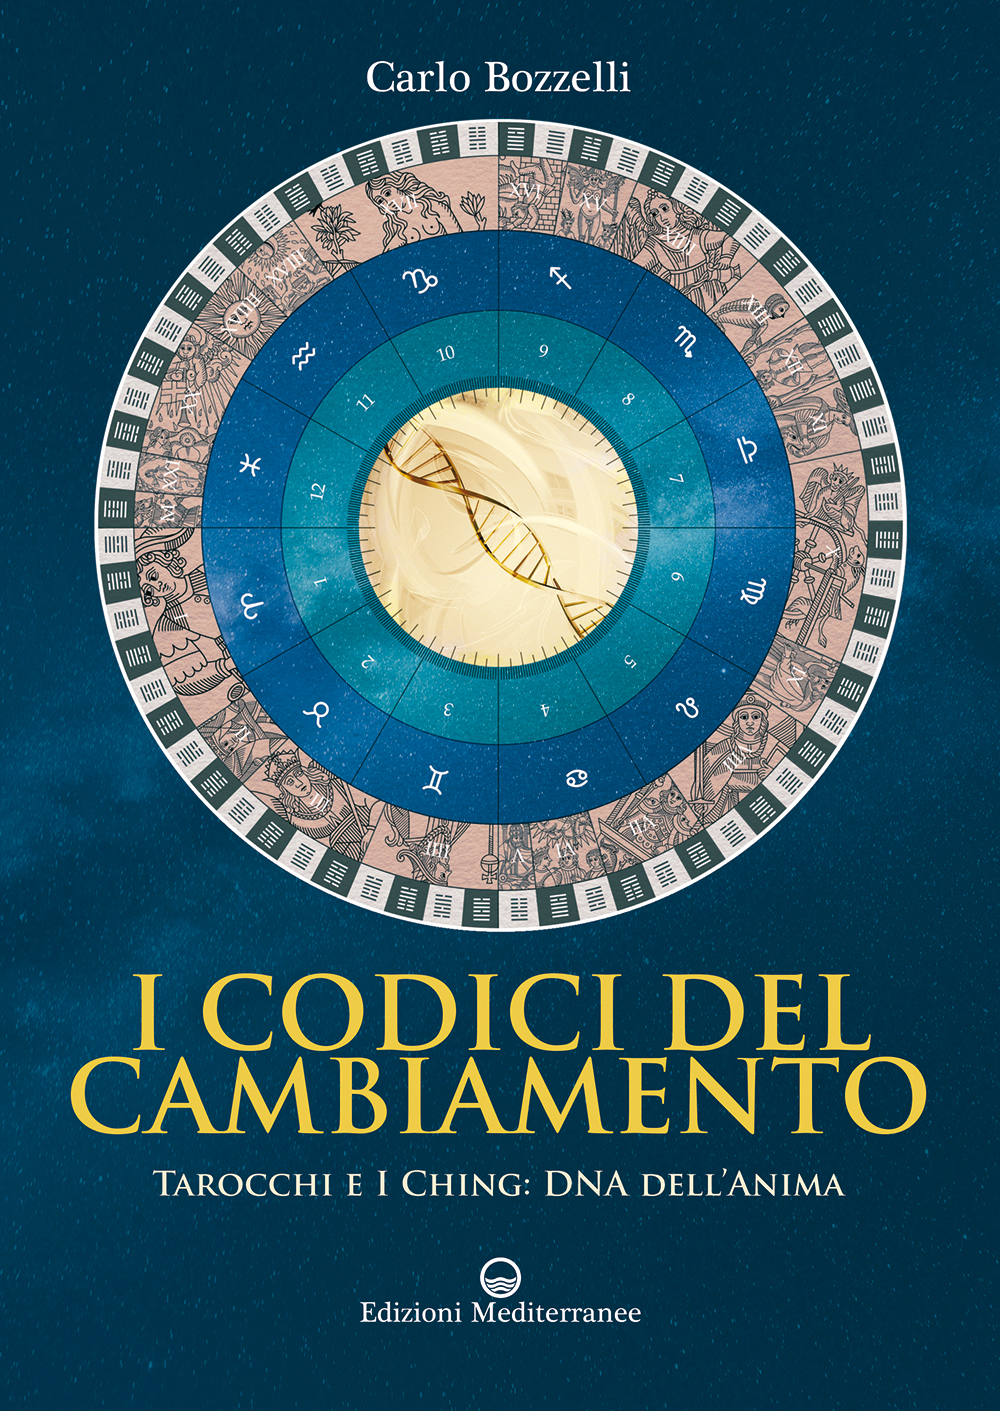 Libri Carlo Bozzelli - I Codici Del Cambiamento. Tarocchi E I Ching: DNA Dell'anima NUOVO SIGILLATO, EDIZIONE DEL 23/05/2019 SUBITO DISPONIBILE